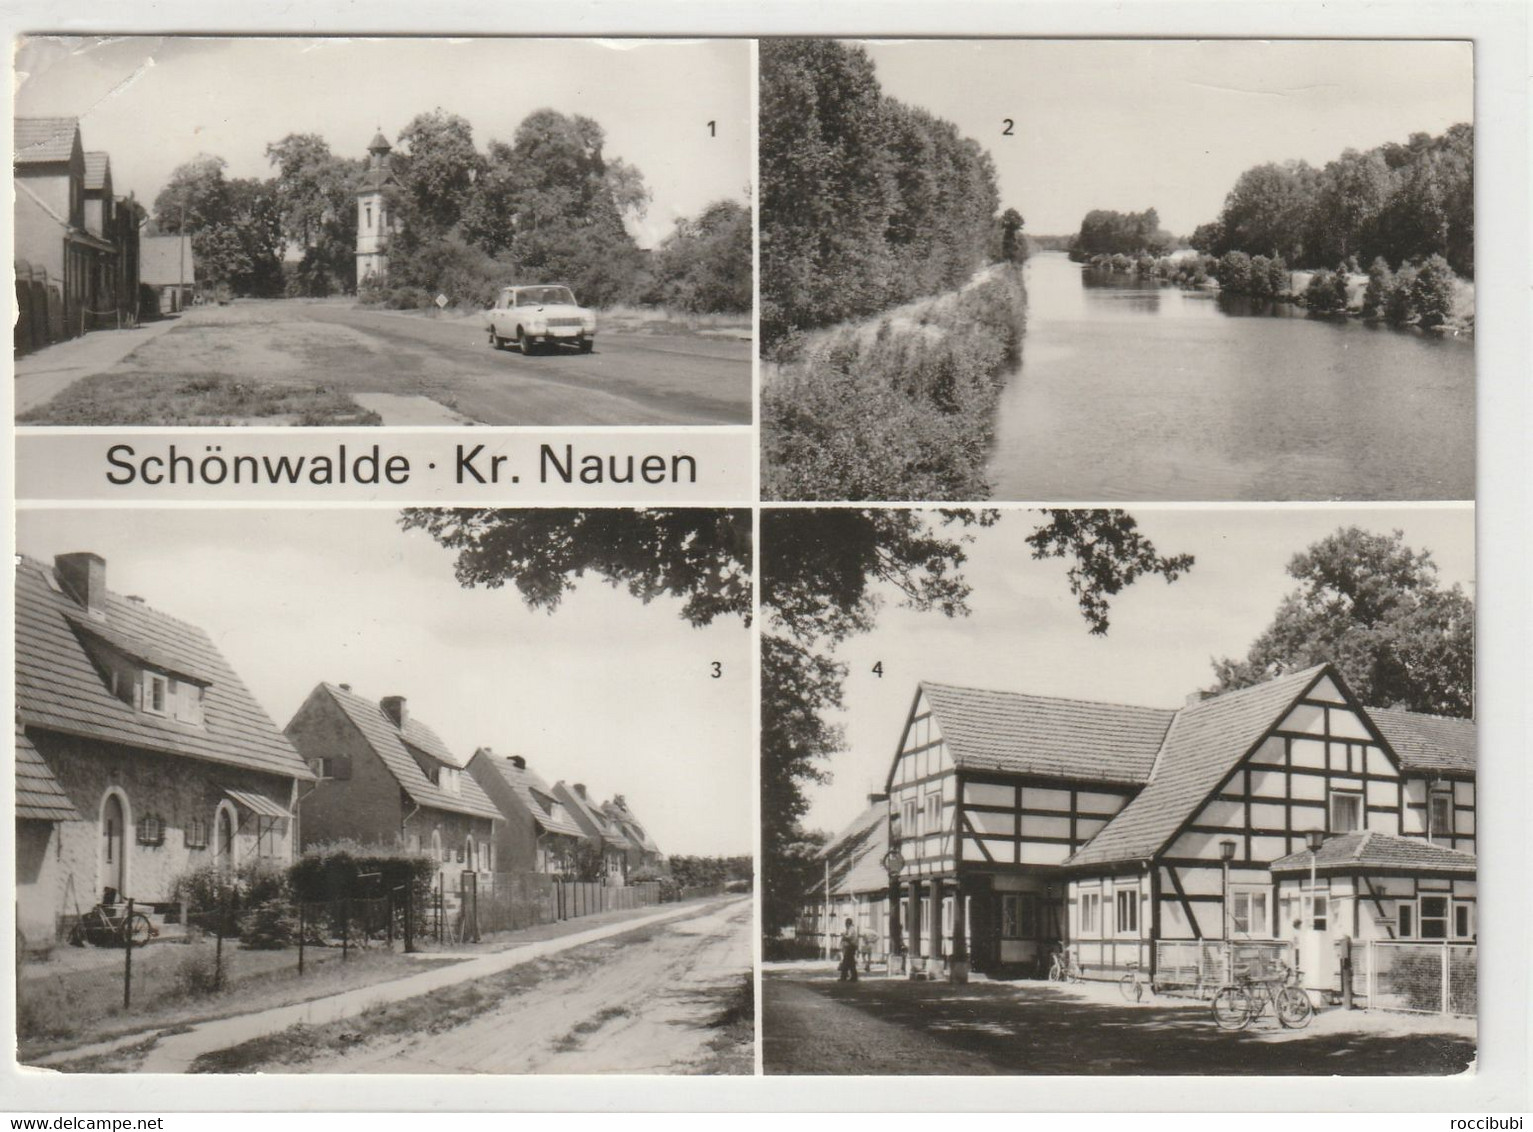 Schönwalde - Schoenwalde